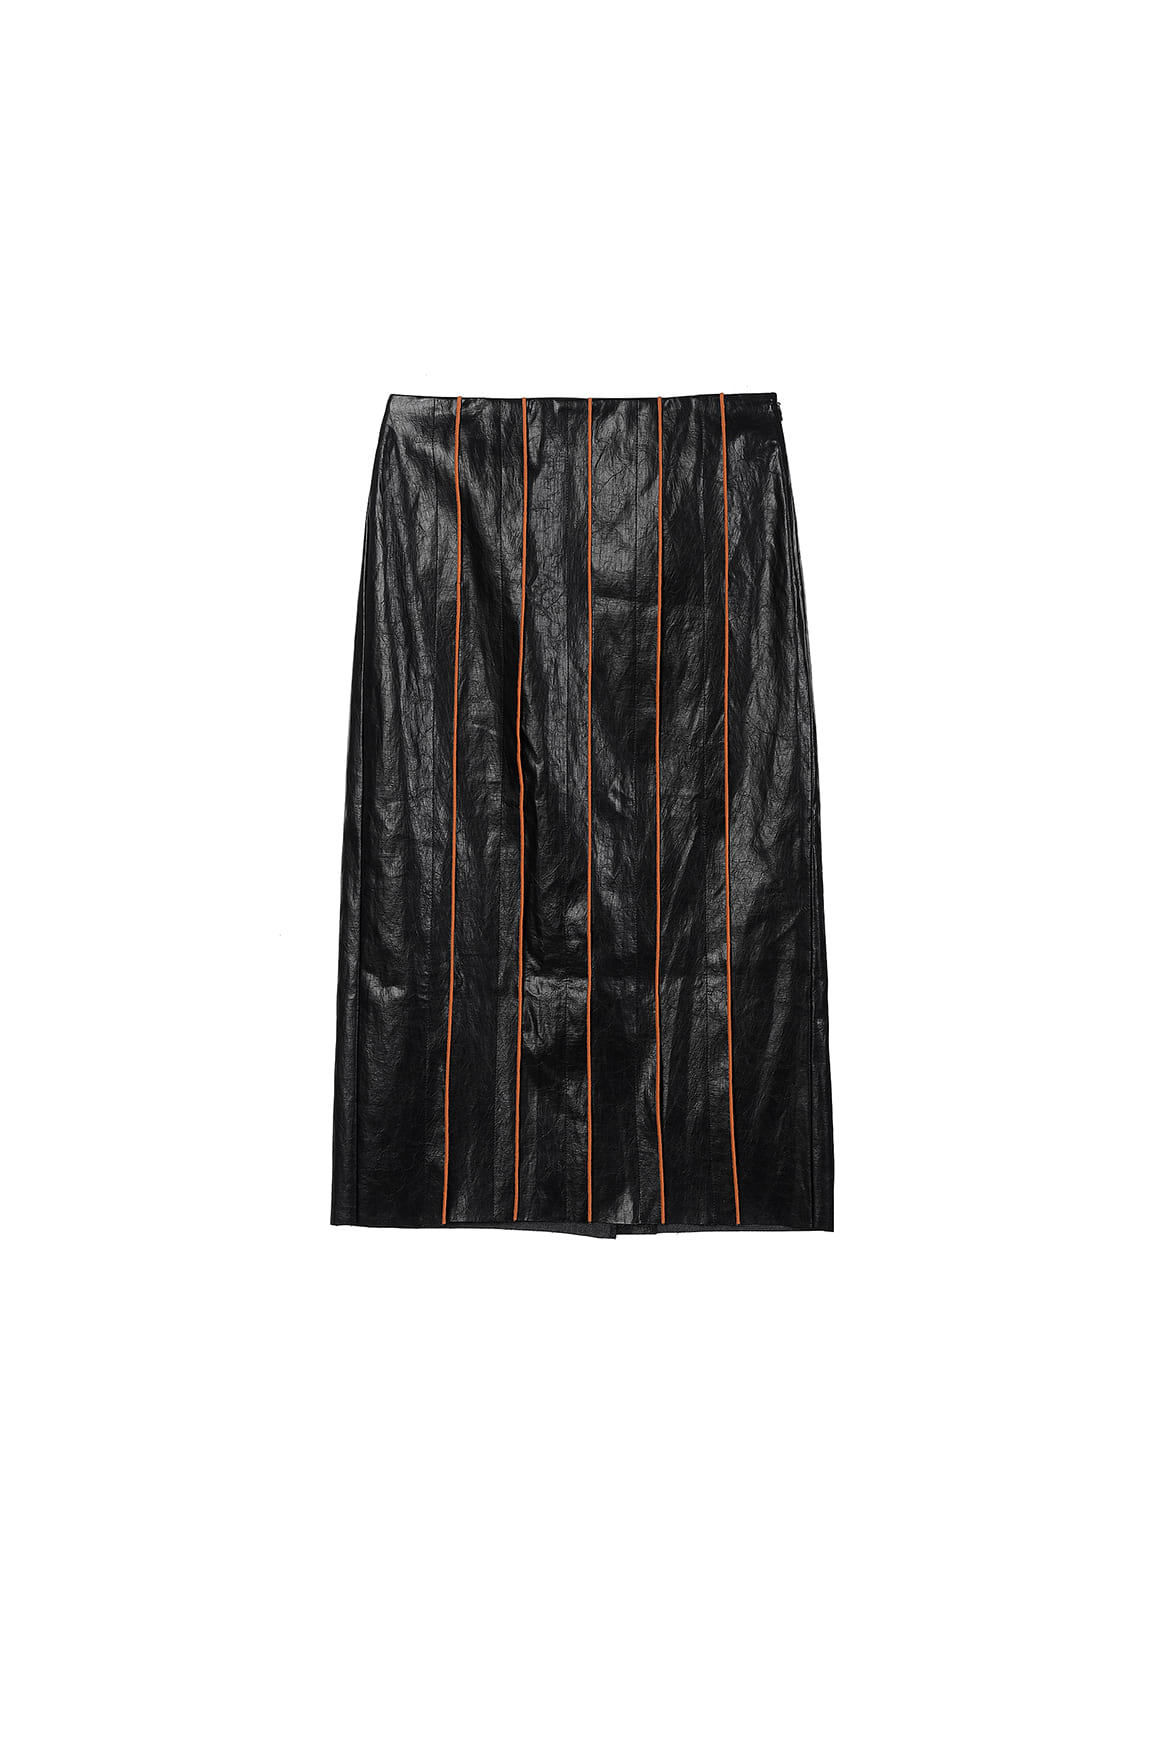 [리퍼브] Colour Edges Eco Leather Skirt_Black+Autumnal Brown